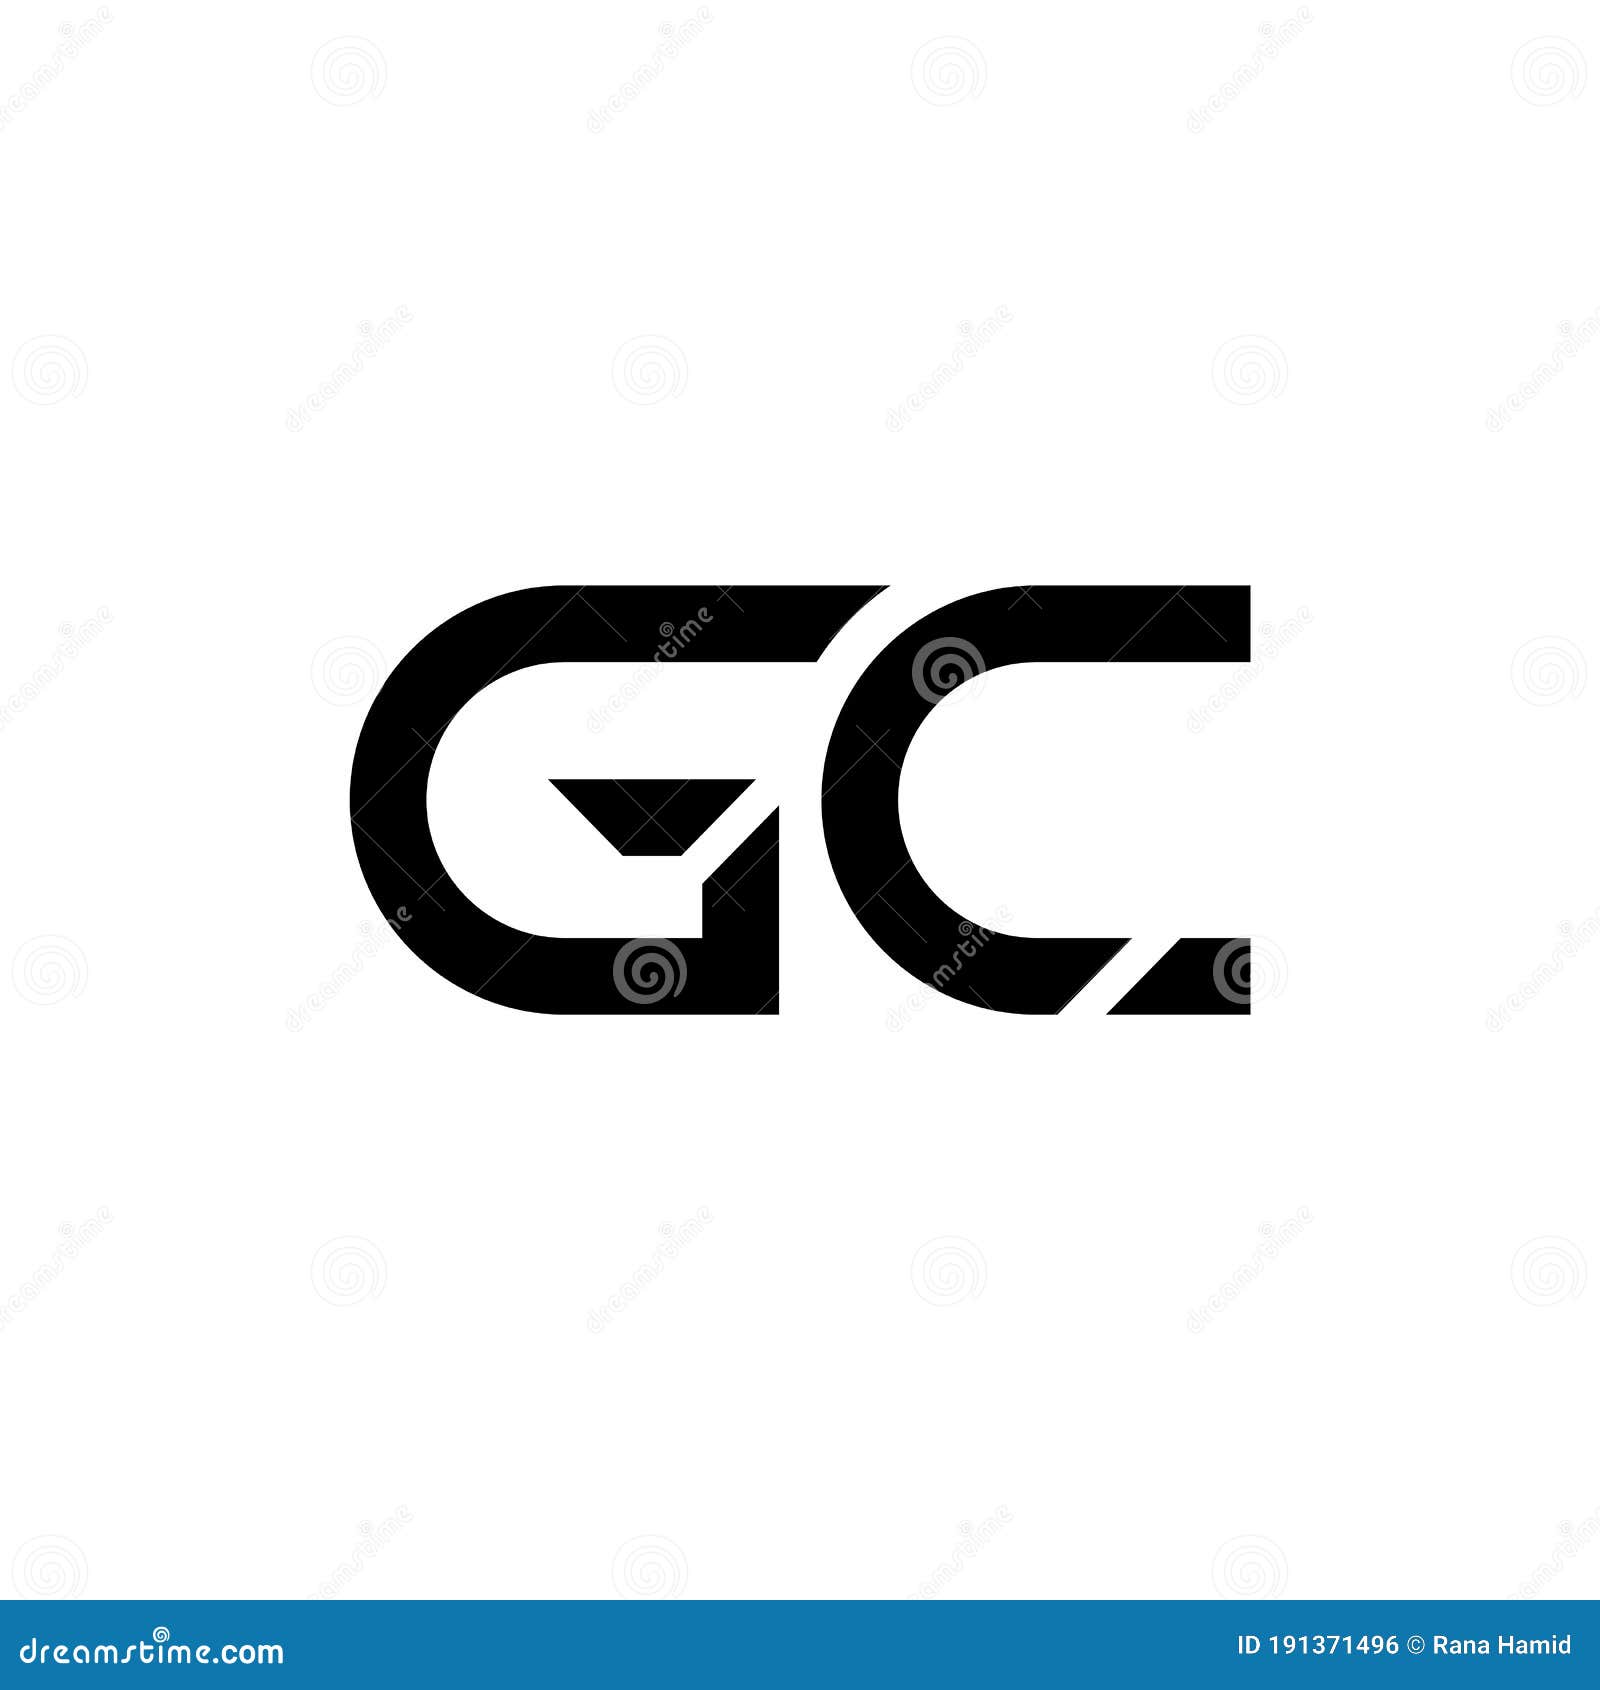 Top 123+ gc logo design